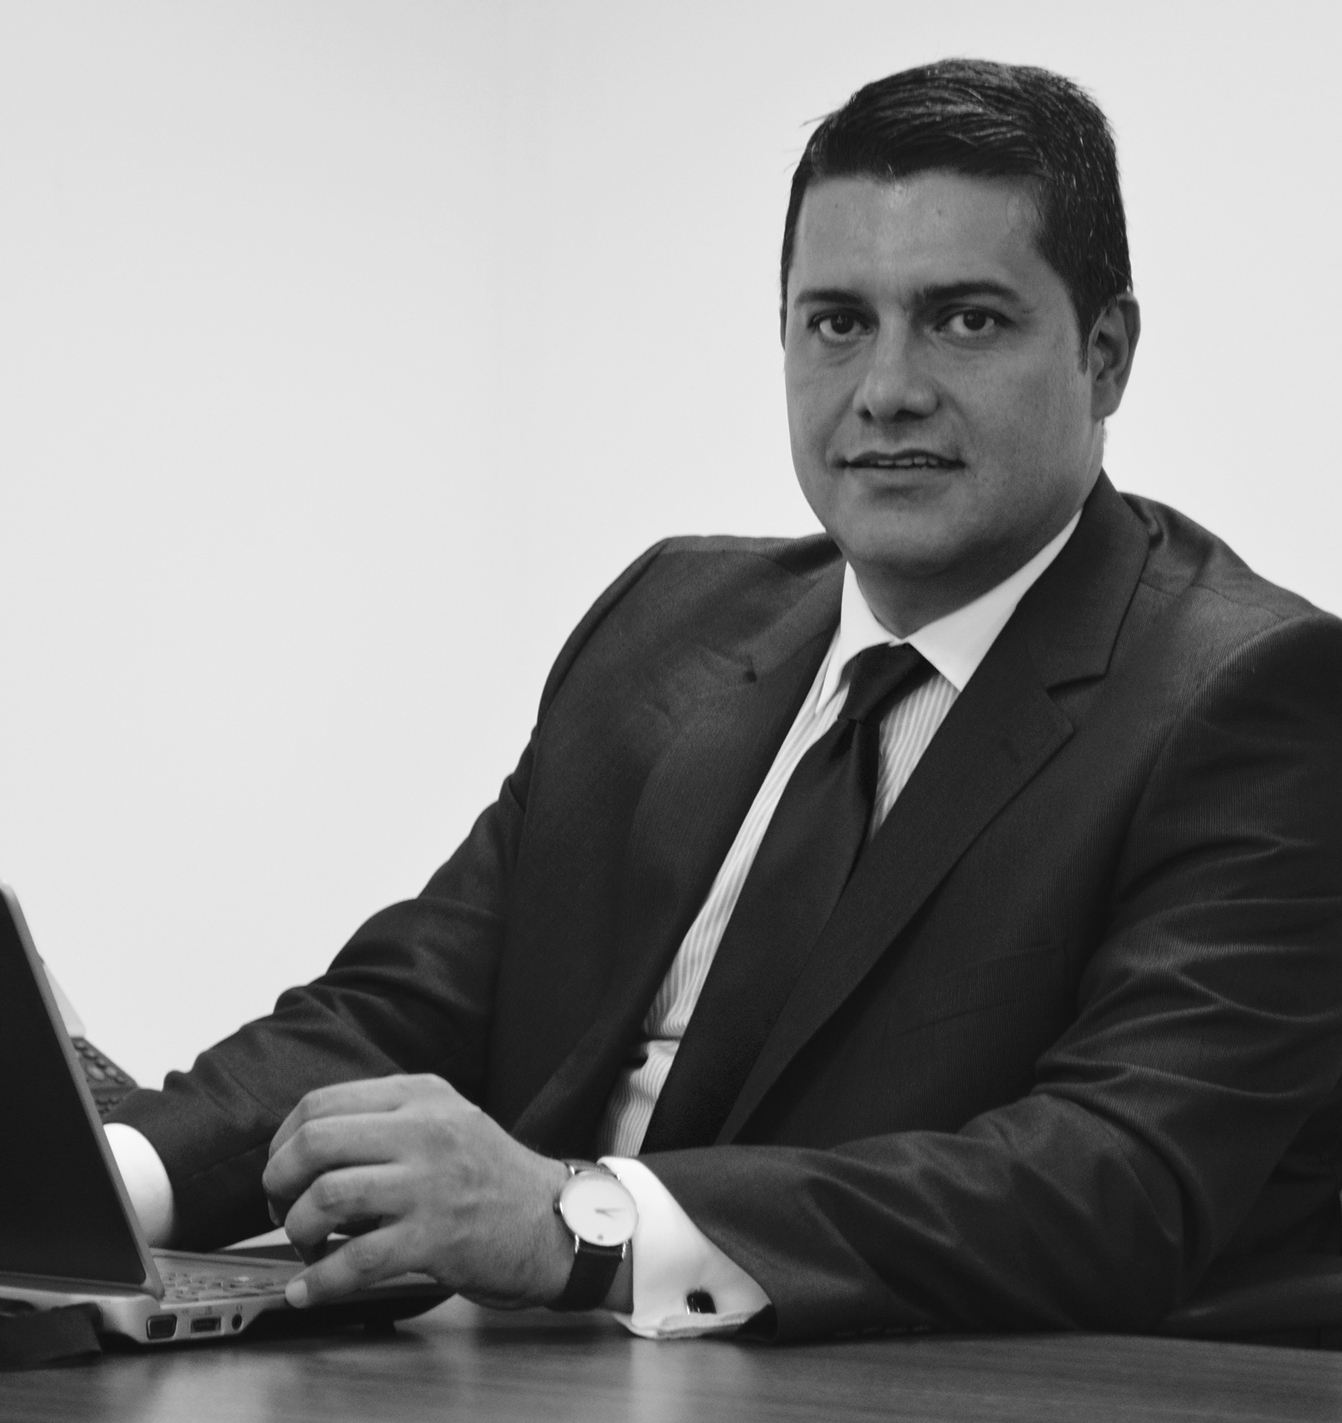 Noticia Exconsejero Gabriel Gaitán León, elegido como nuevo miembro del SMEIG, organismo asesor del IASB, entidad internacional emisora de las NIIF.